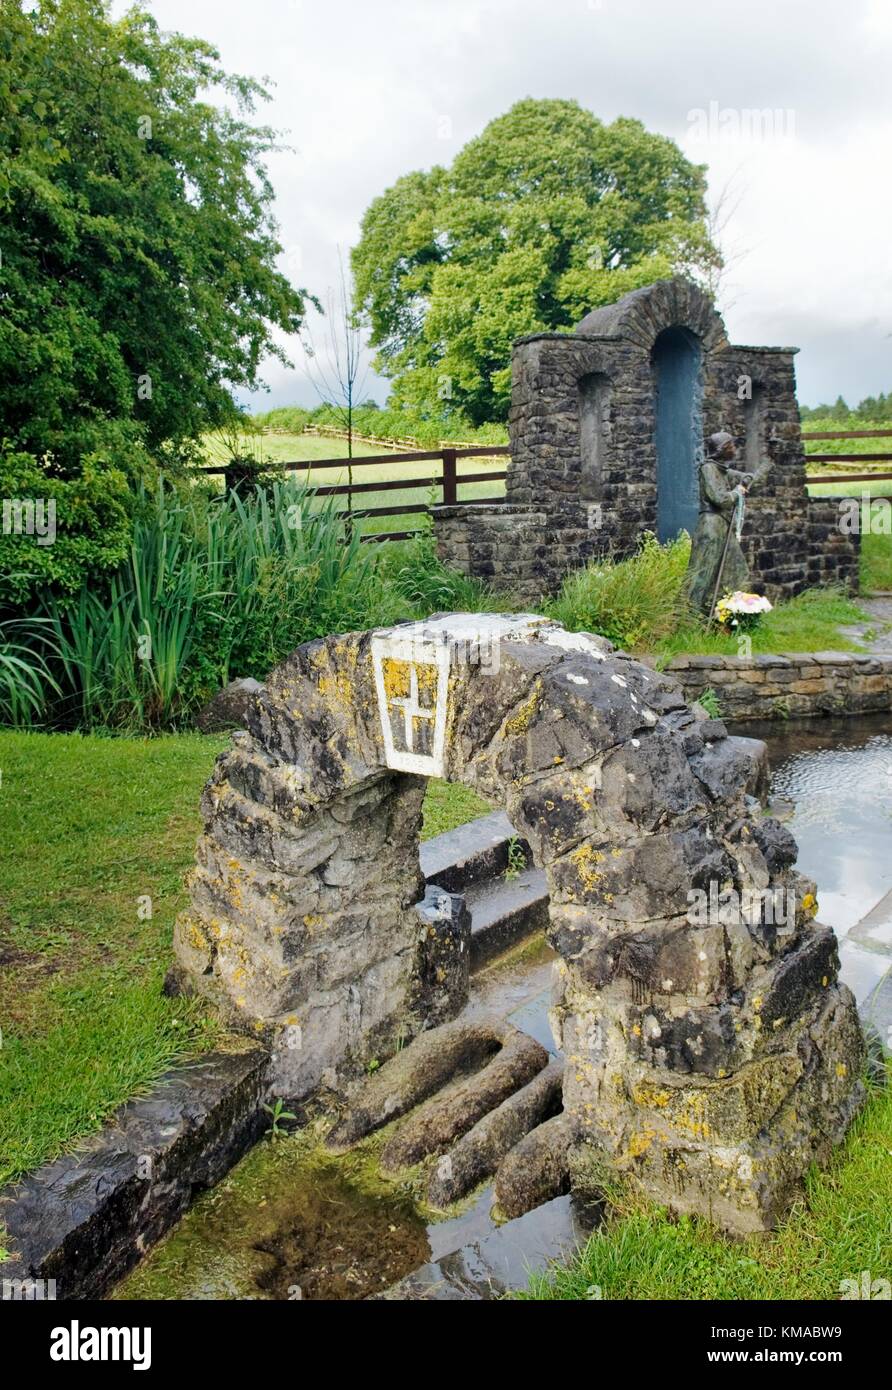 St. Brigid heiligen Brunnen, heidnischen und mittelalterlichen keltischen frühchristlicher site in der Nähe von Stadt Kildare, County Kildare, Irland. Stockfoto